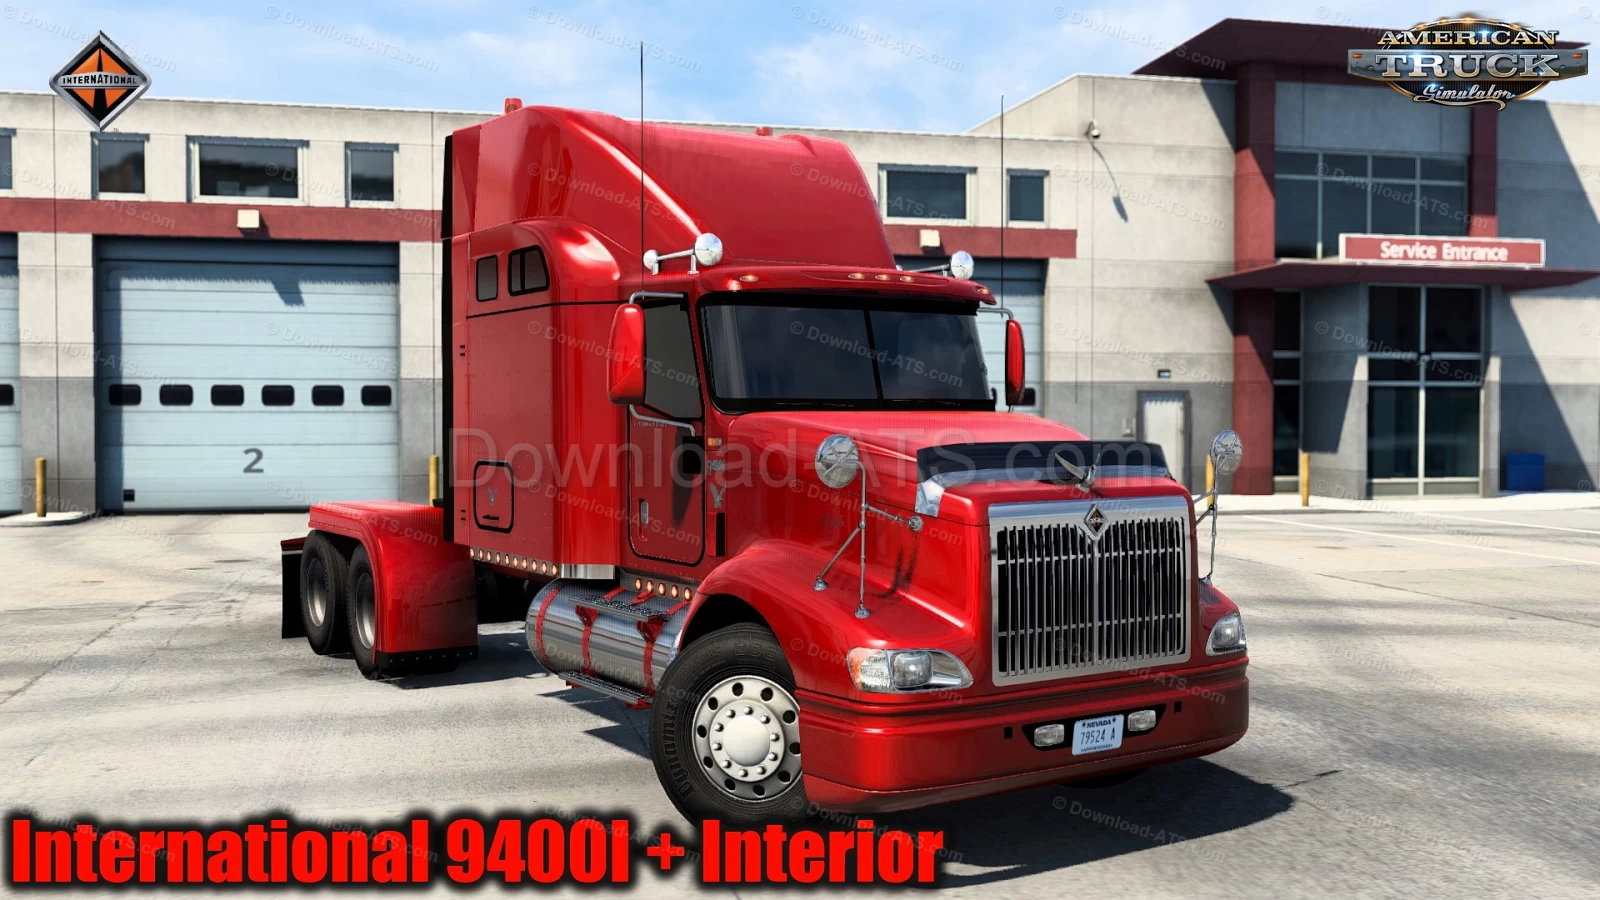 International 9400I Truck + Interior v1.5 (1.49.x) for ATS